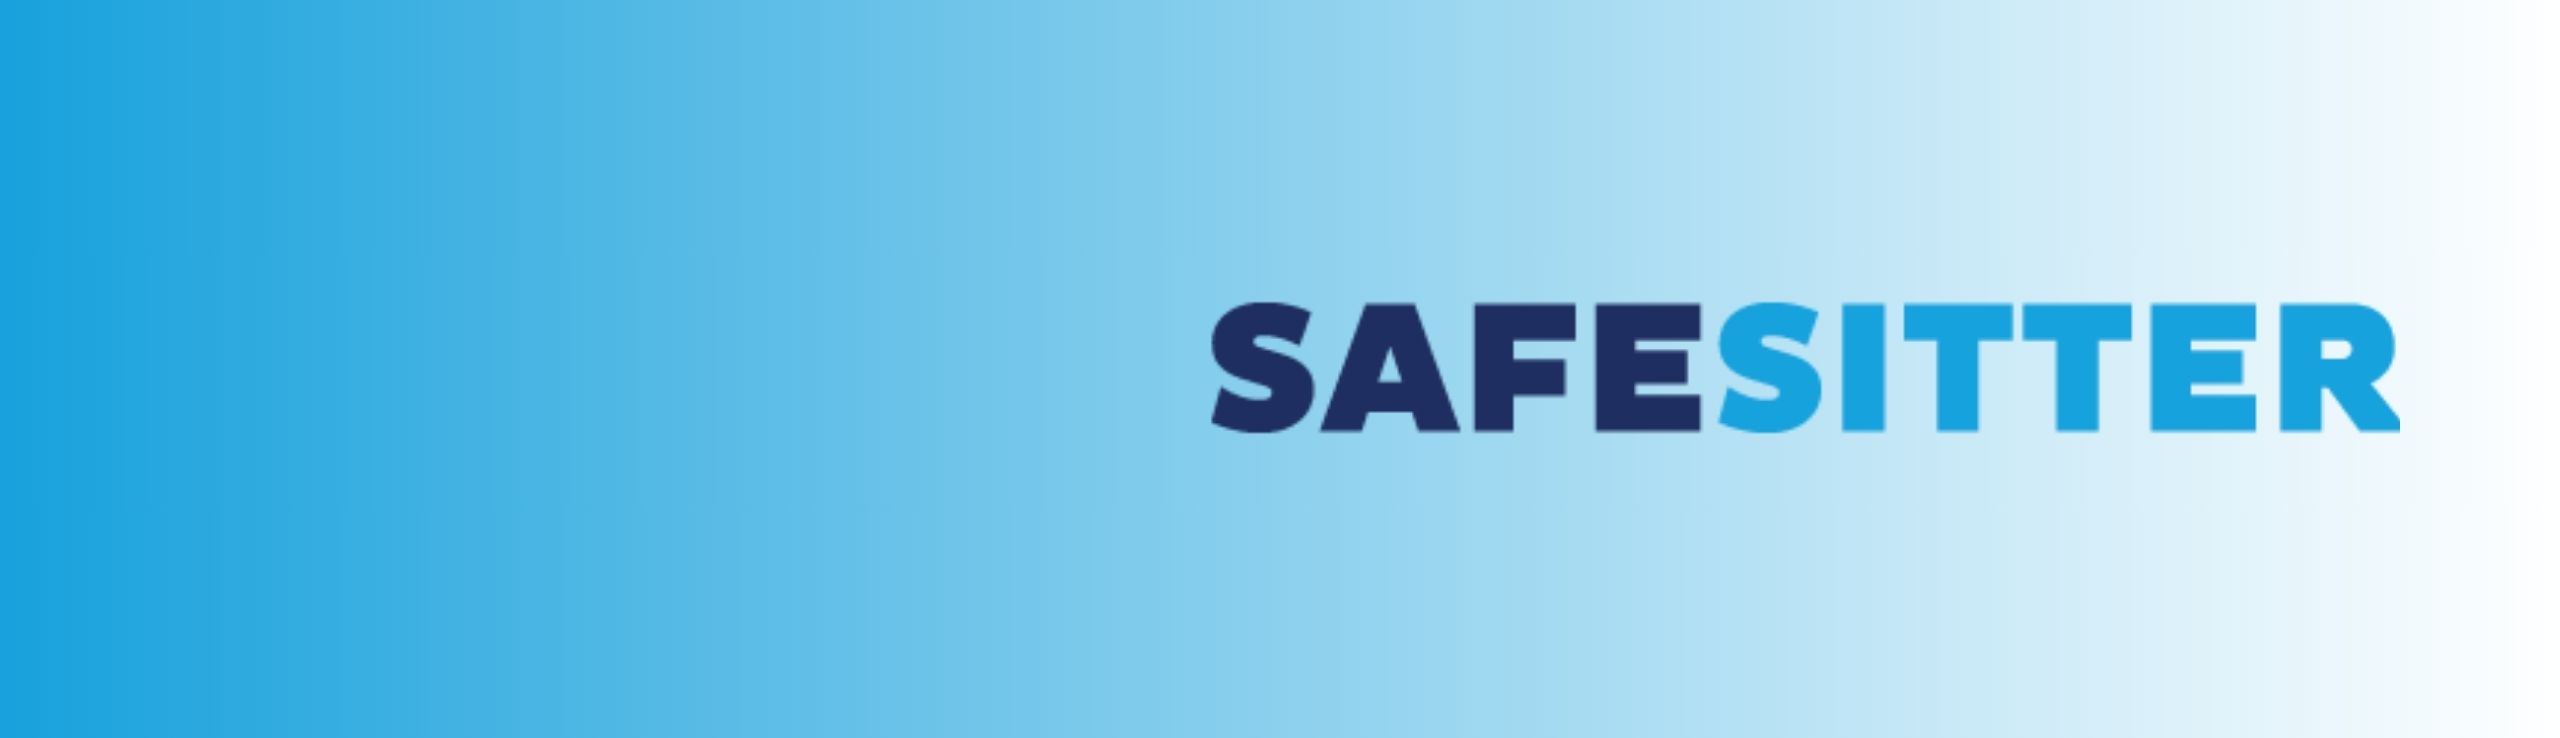 Safe Sitter logo